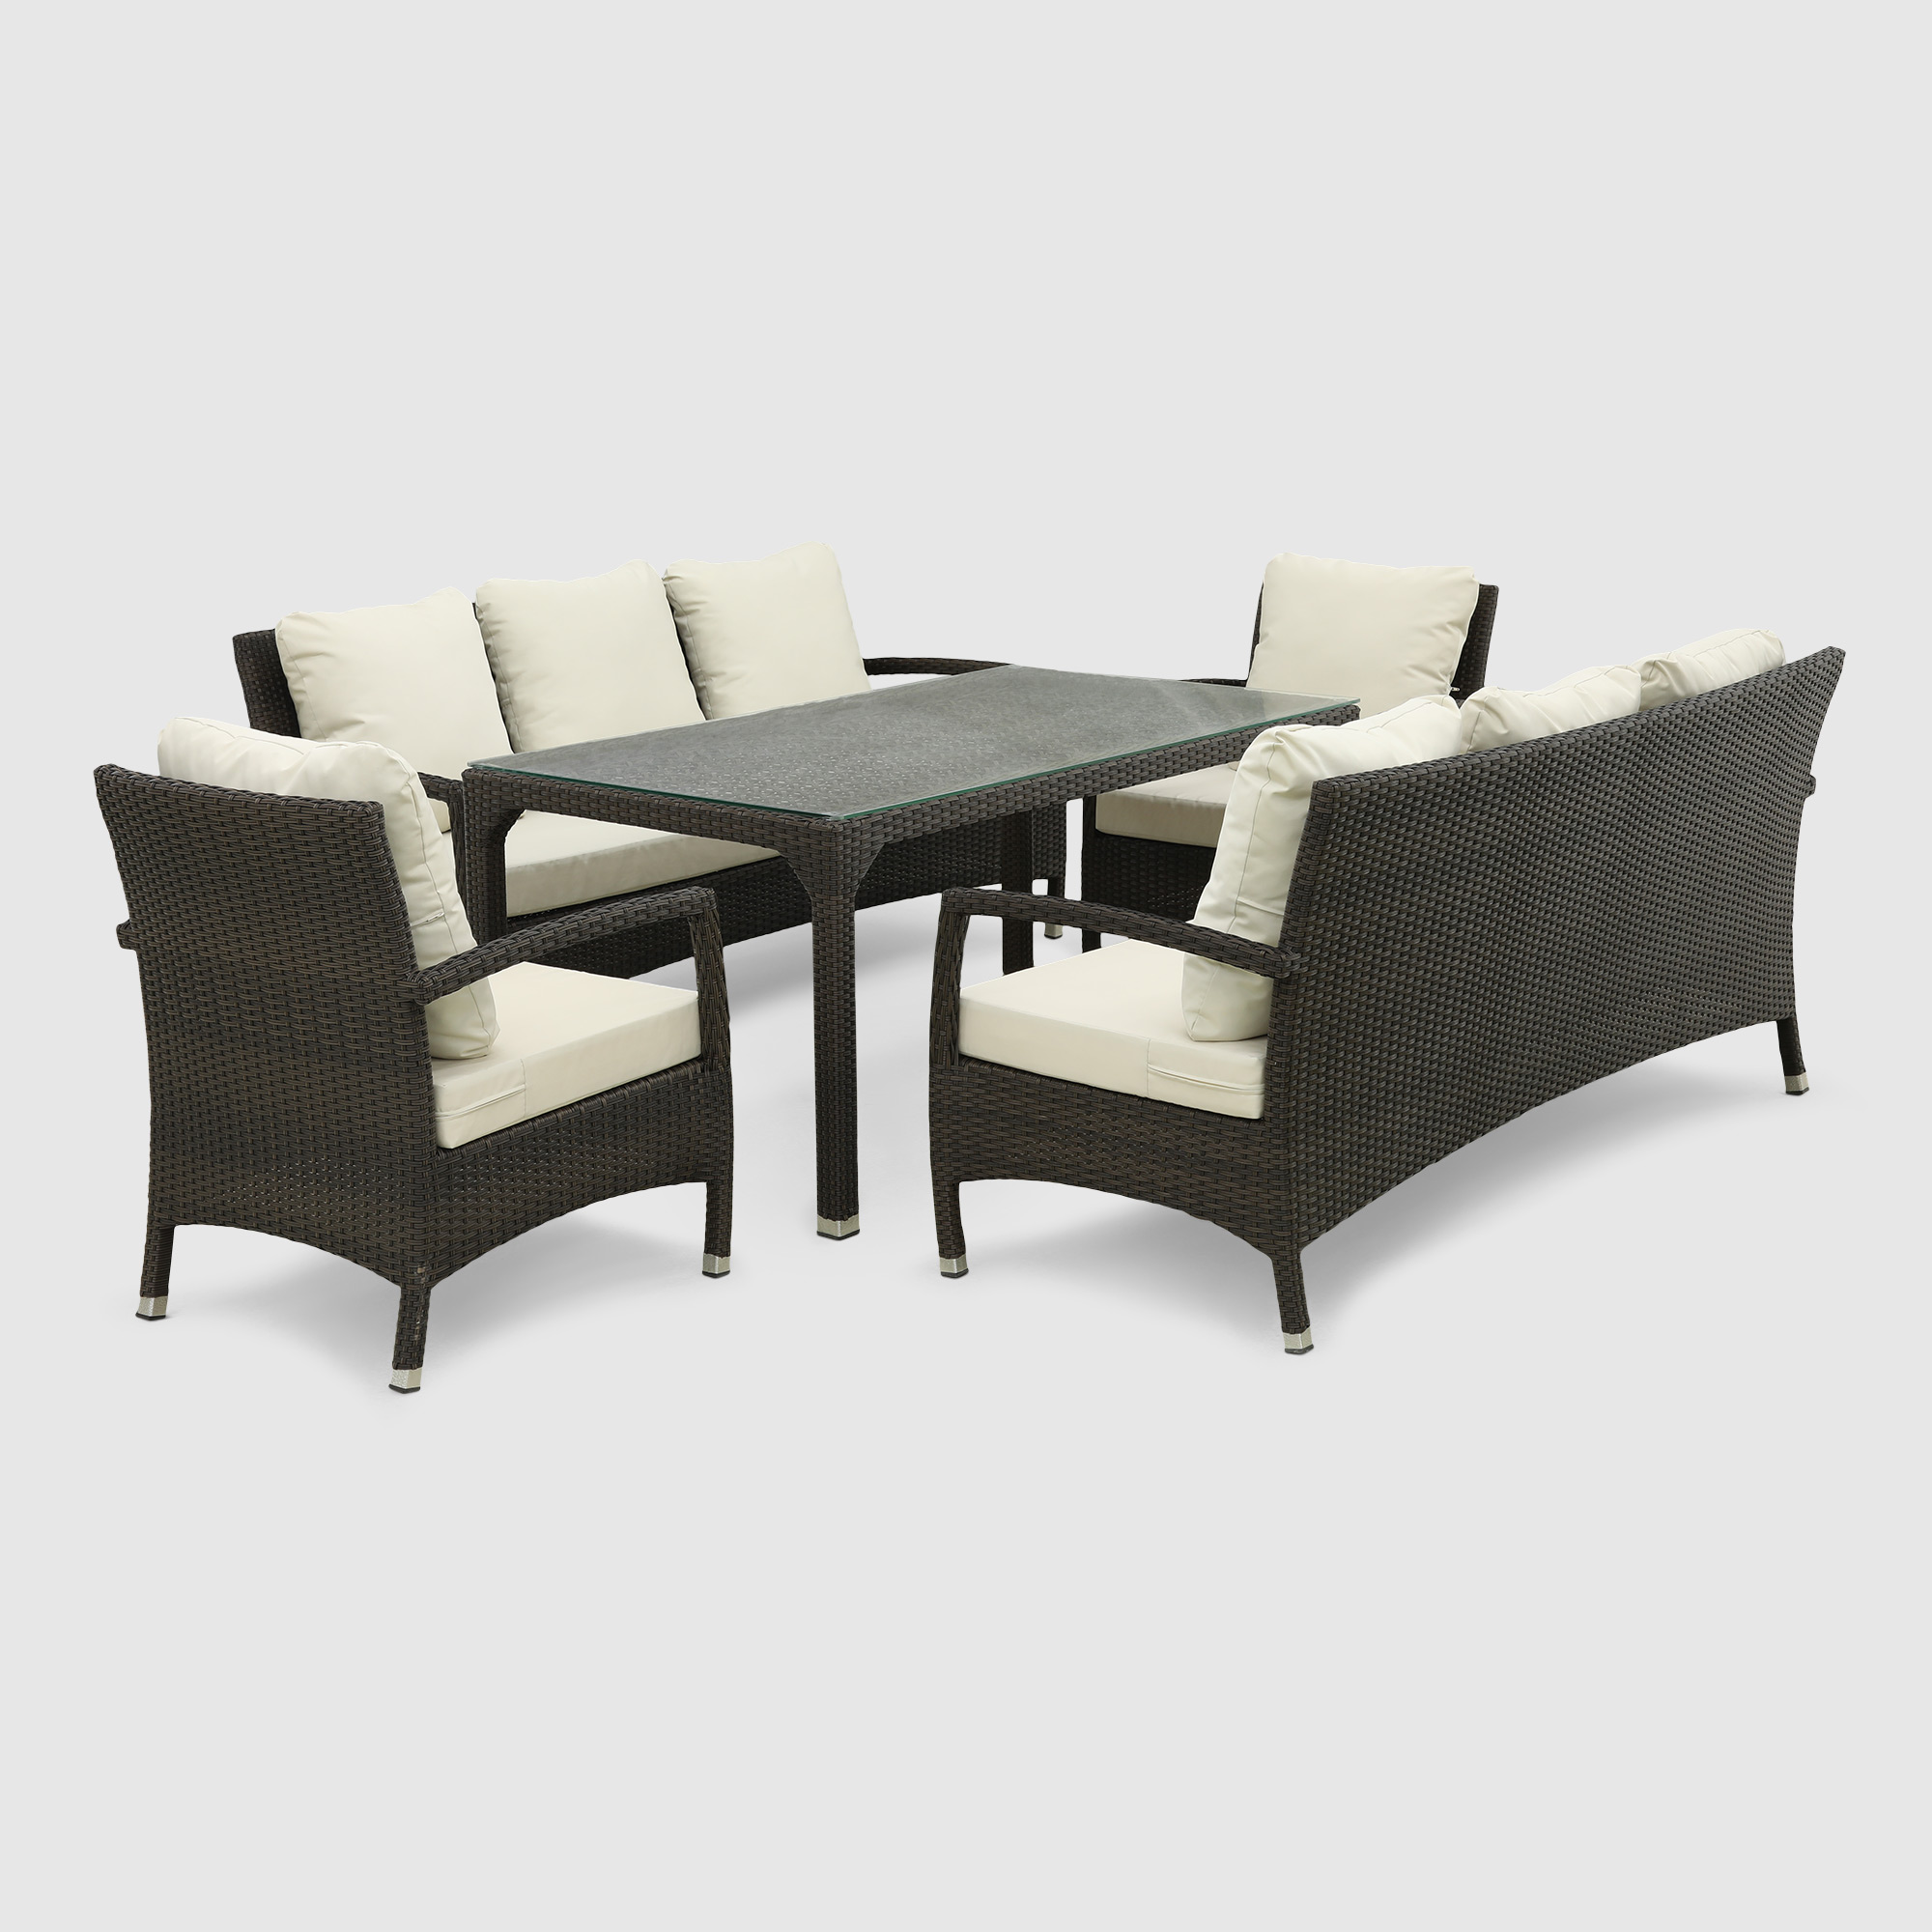 Комплект мебели NS Rattan Shafran чёрный с белым 5 предметов набор аксессуаров ag concept чёрный серебряной каймой 5 предметов